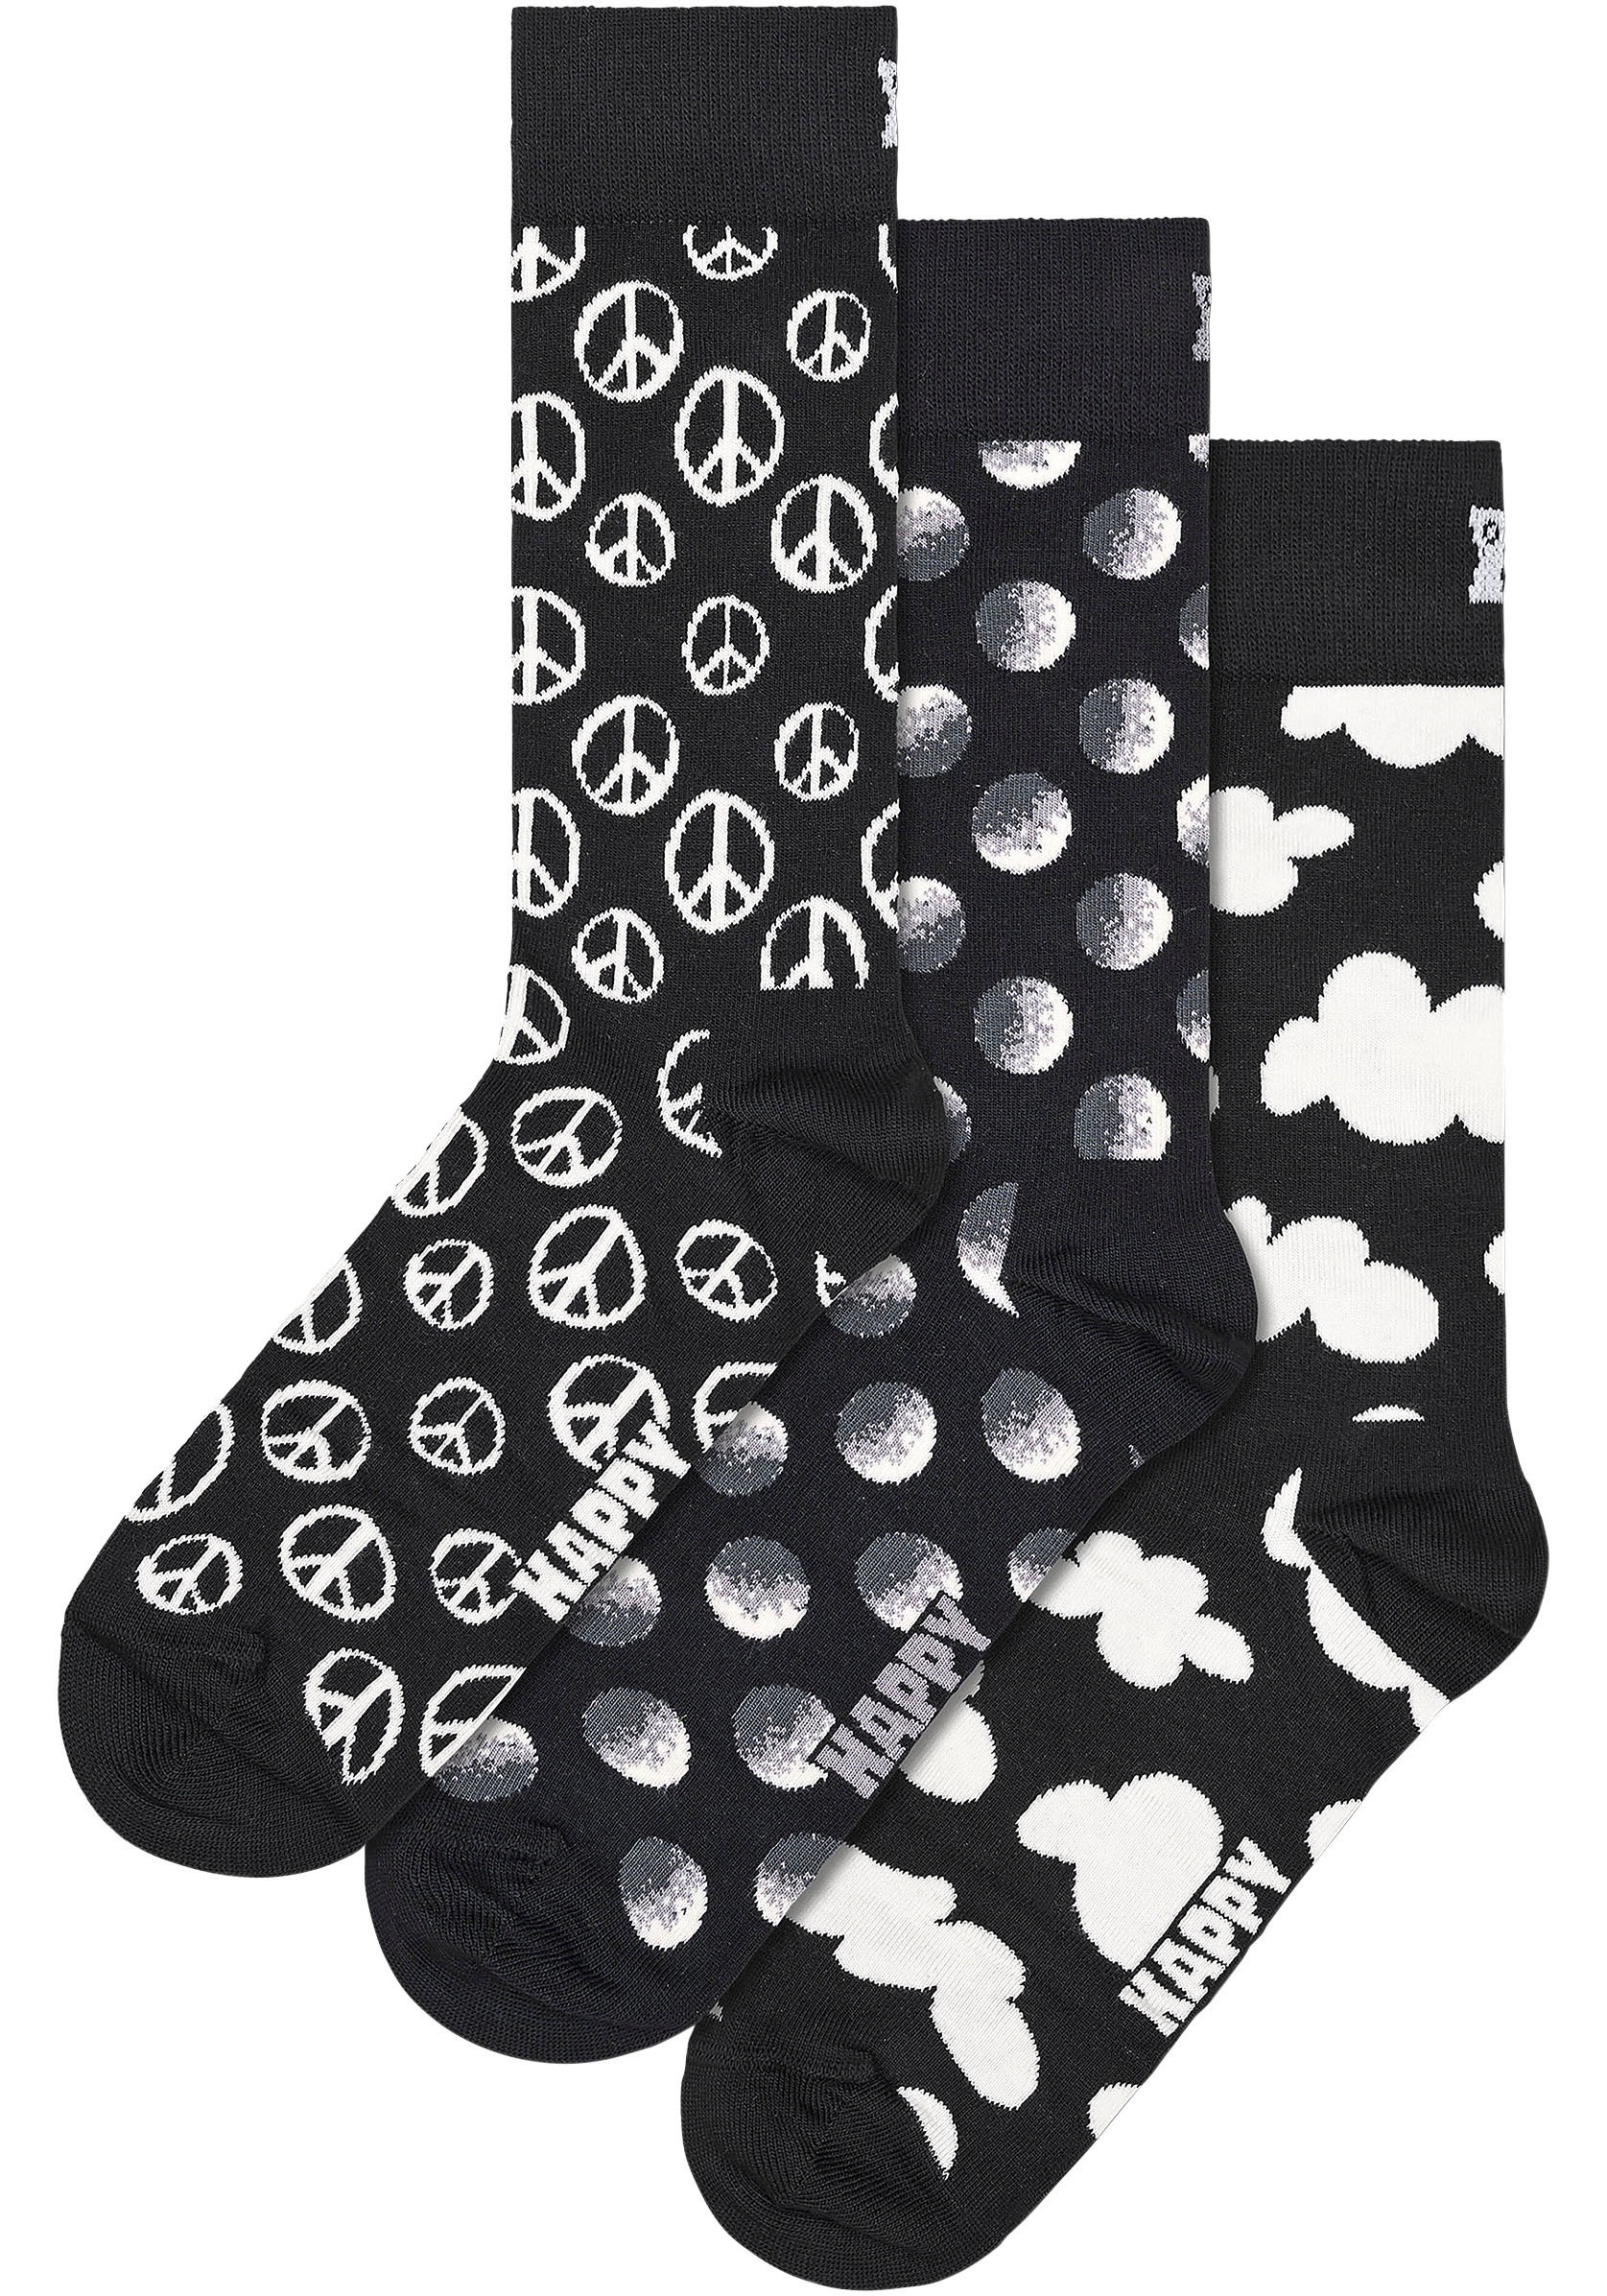 Happy Socks Socken, (Box, 3 Paar), Black & White Gift Set